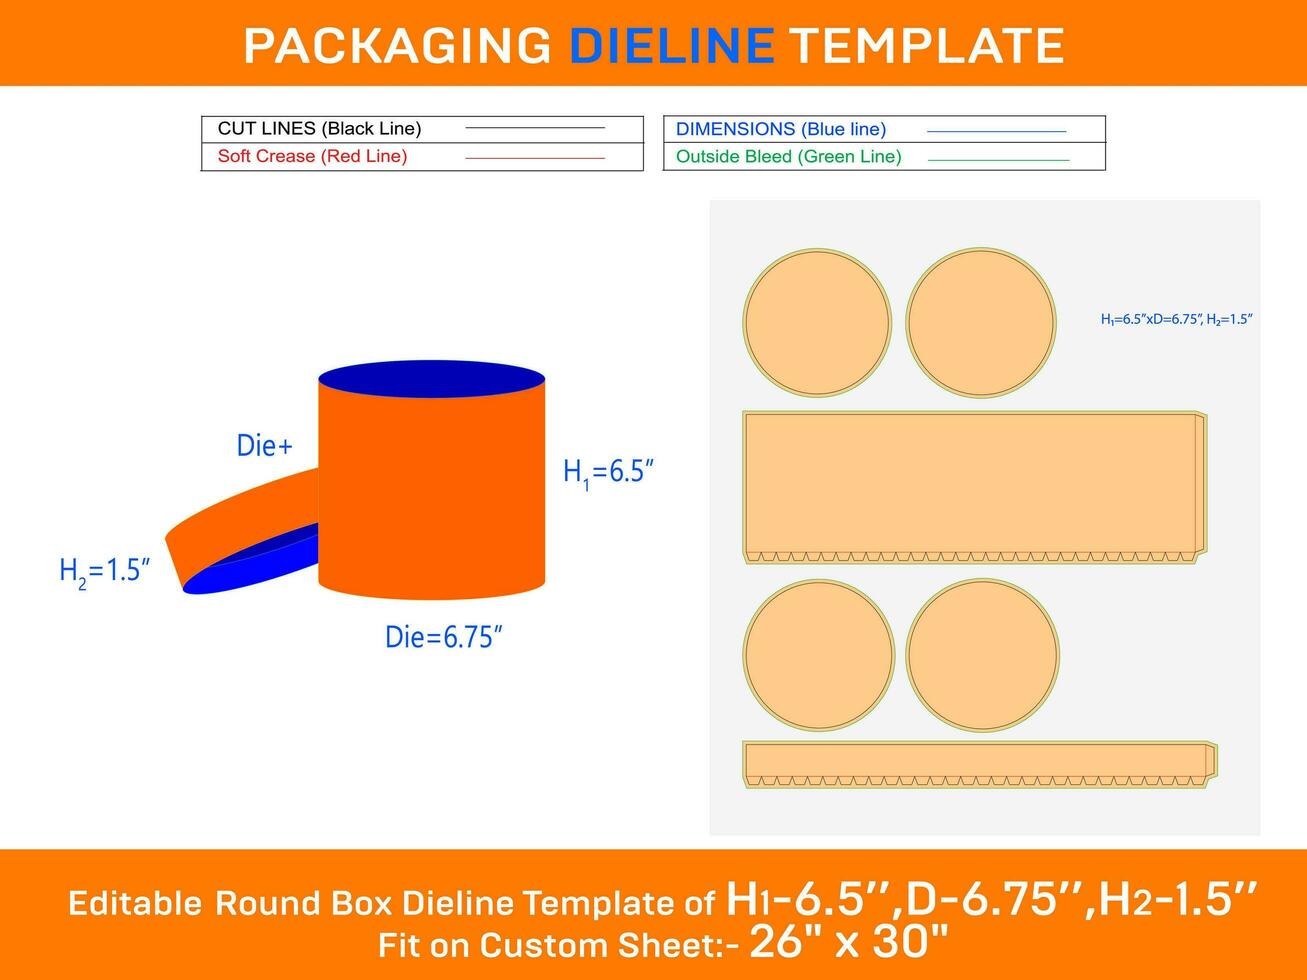 papier doos, ronde deksel geschenk doos dieline sjabloon met de dimensie h1 6.5xd 6.75xh2 1.5 inch vector